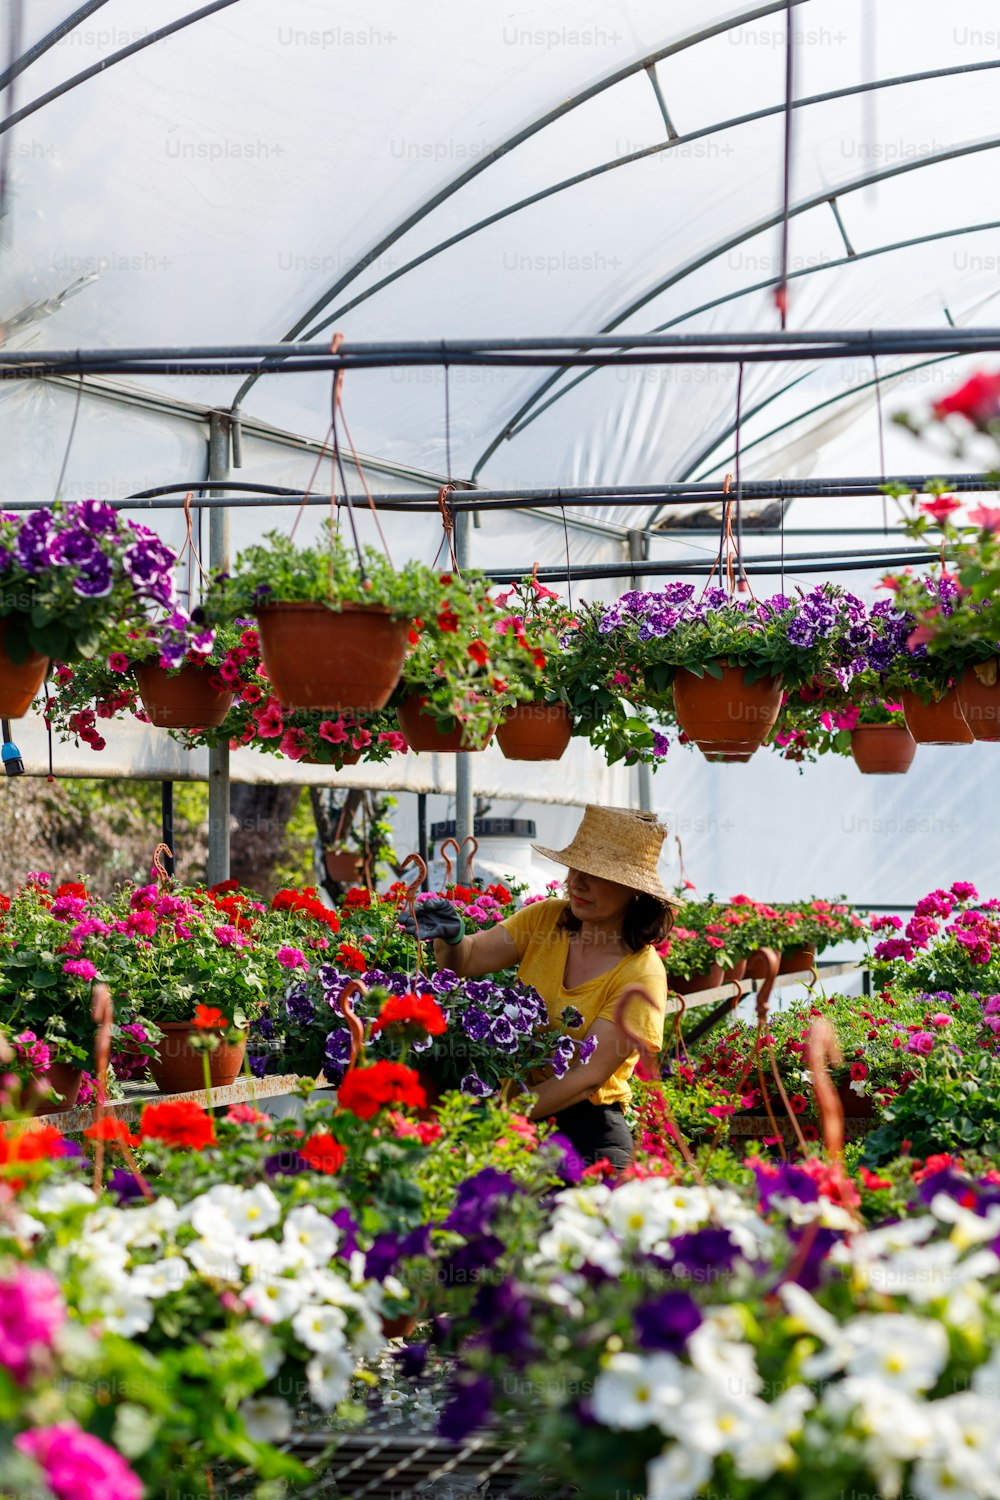 Une femme travaillant dans une serre remplie de fleurs